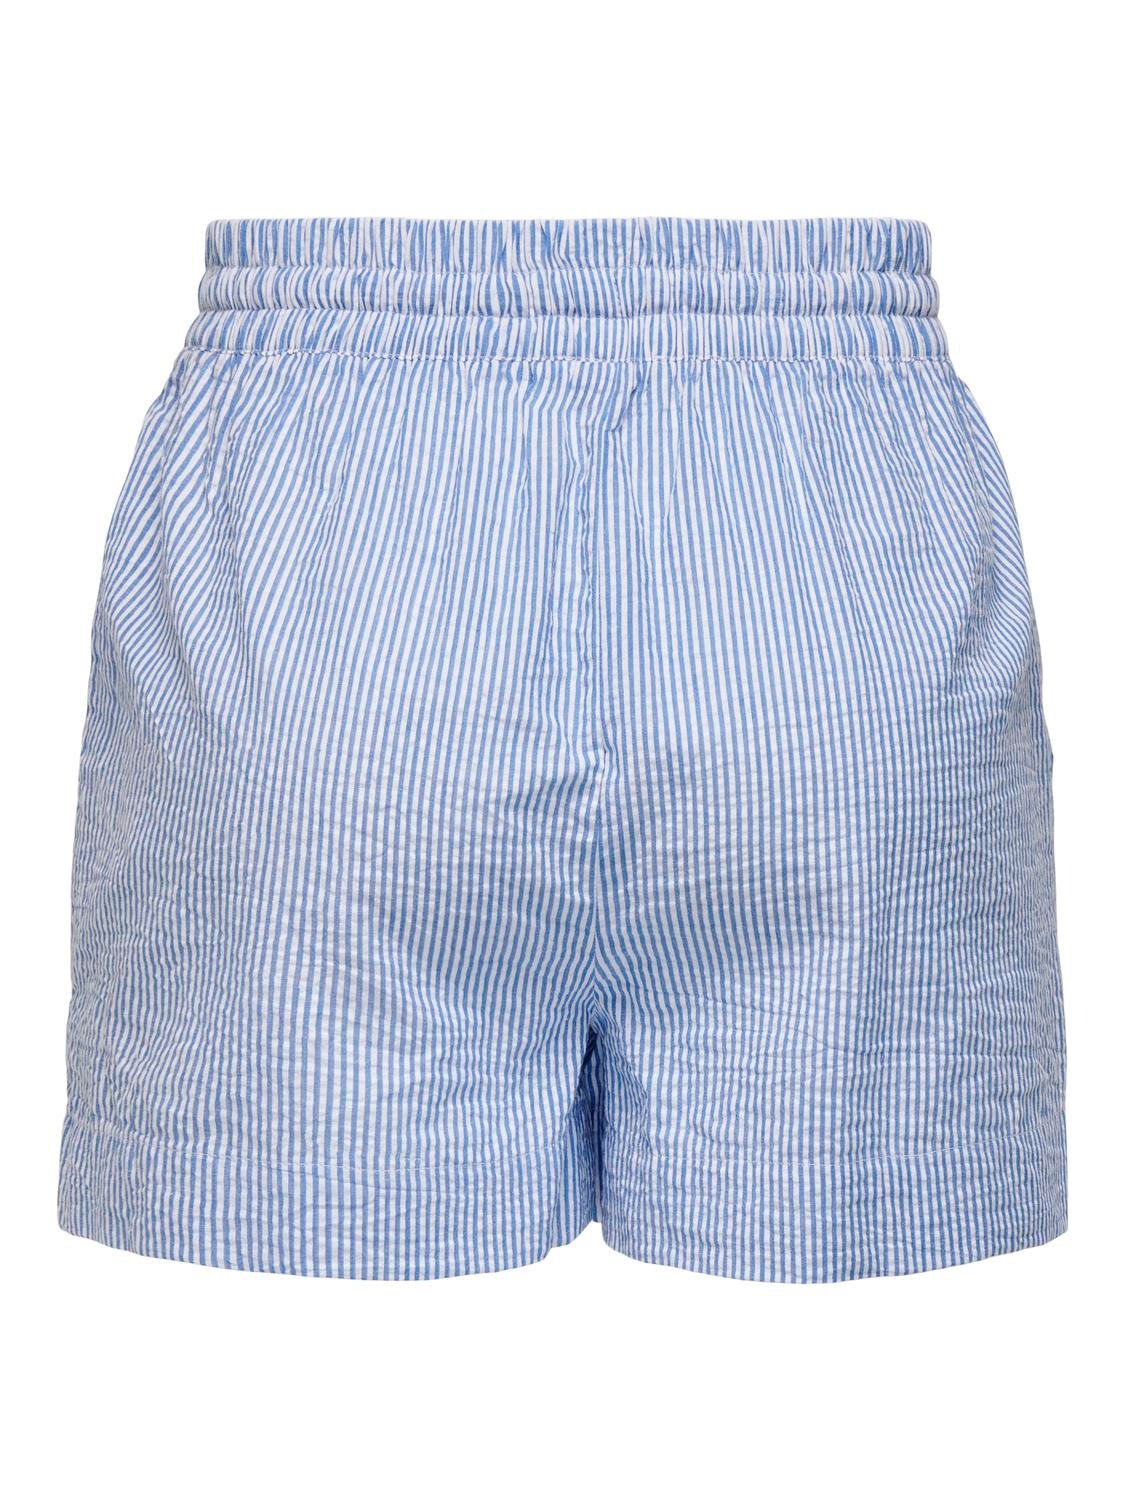 ONLY Shorts med bindebånd -French Blue - 15325018